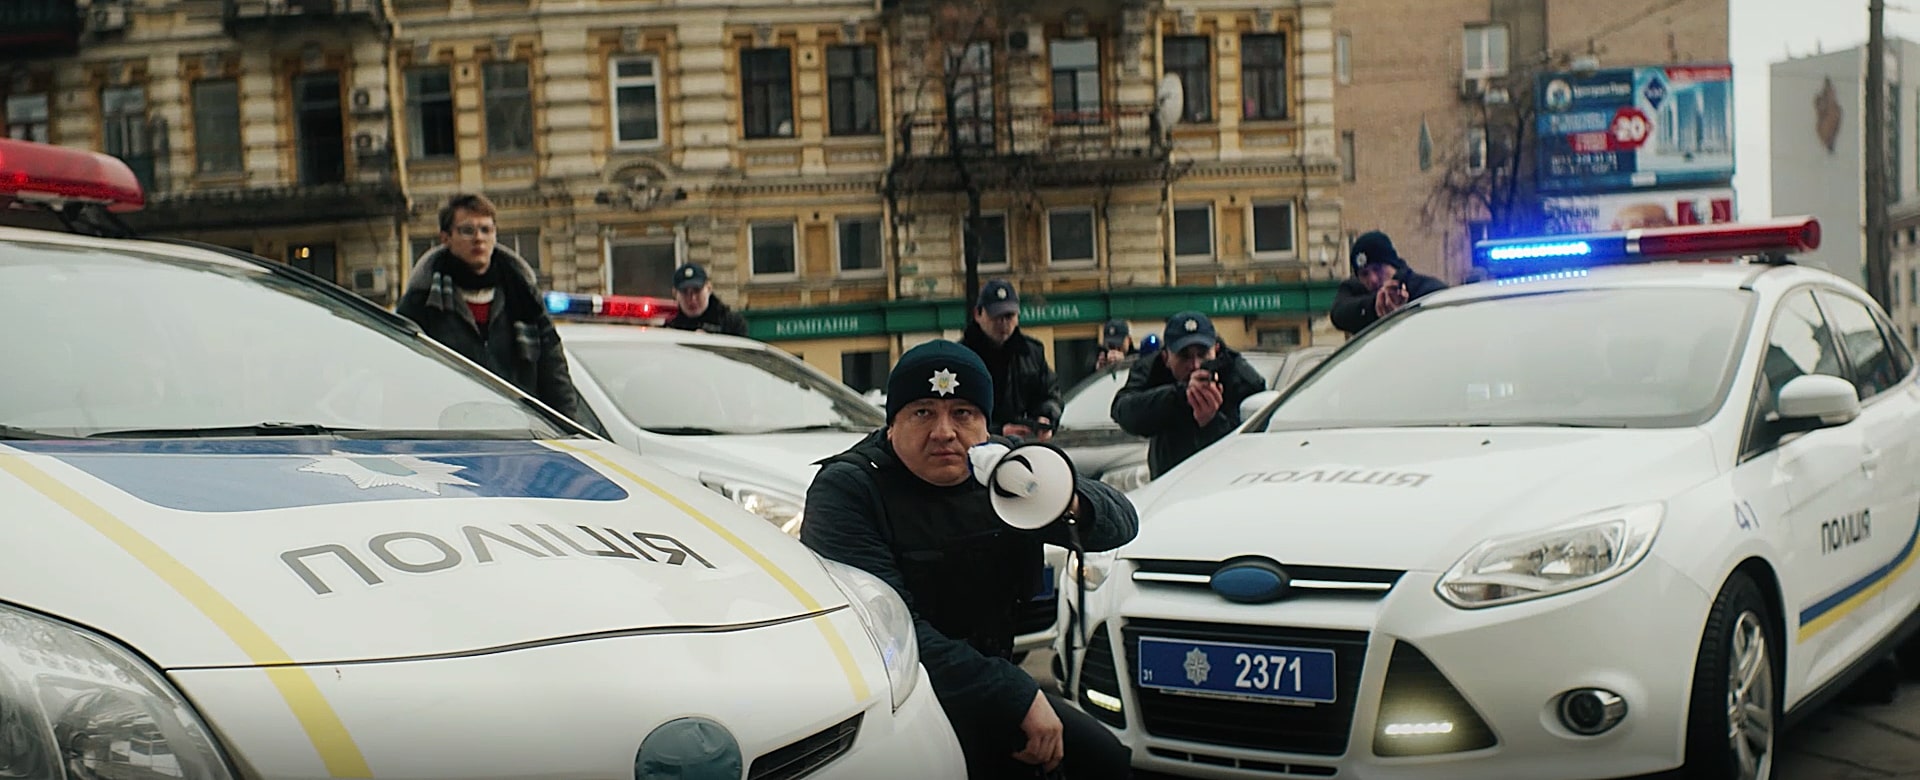 Андрій Бурим, як і в «Бурштинових копах», знову зіграє поліцейського. Кадр із фільму «Пограбування по-українськи»